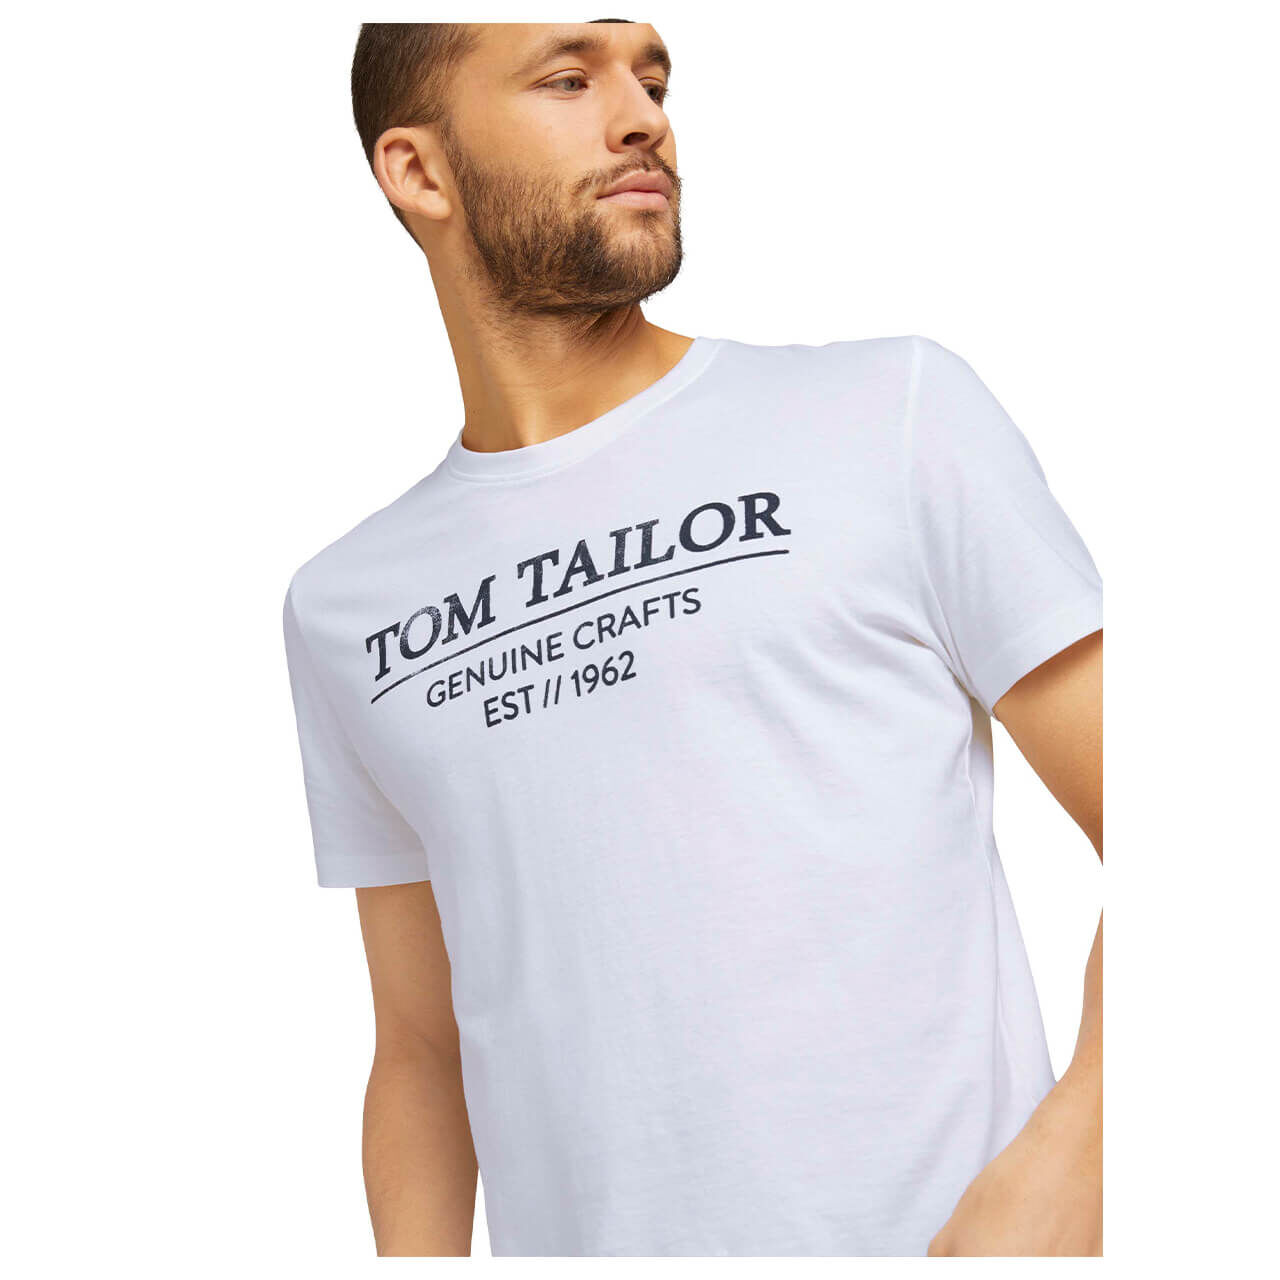 Tom Tailor T-Shirt für Herren in Weiß mit Print, FarbNr.: 20000